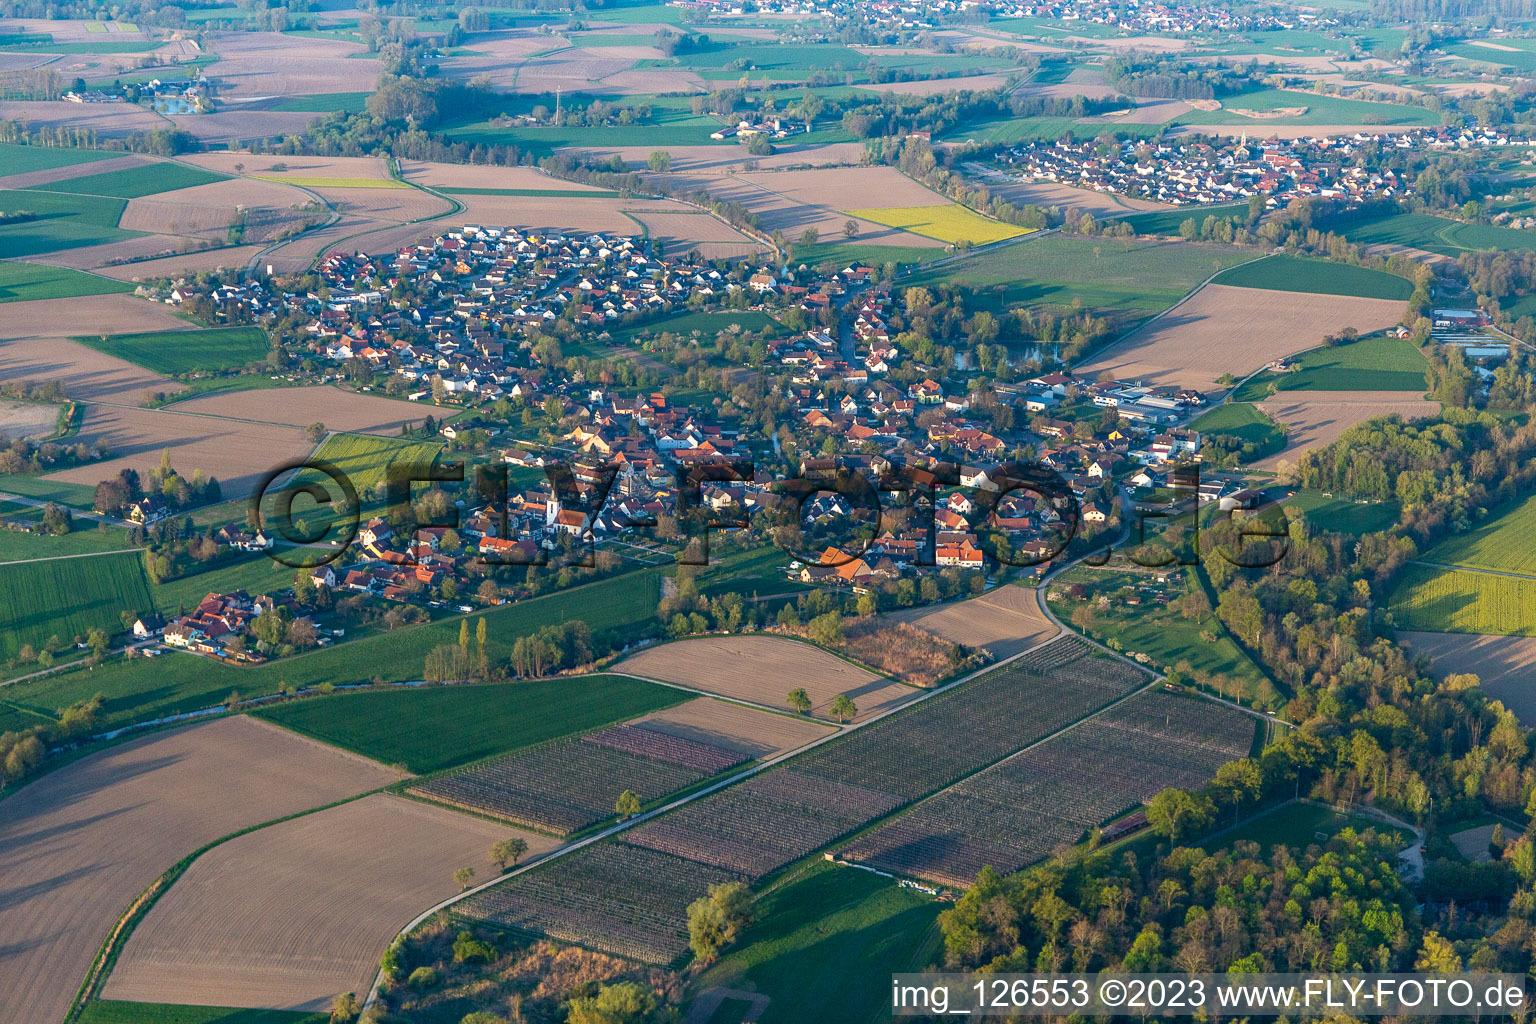 Luftbild von Ortsteil Diersheim in Rheinau im Bundesland Baden-Württemberg, Deutschland